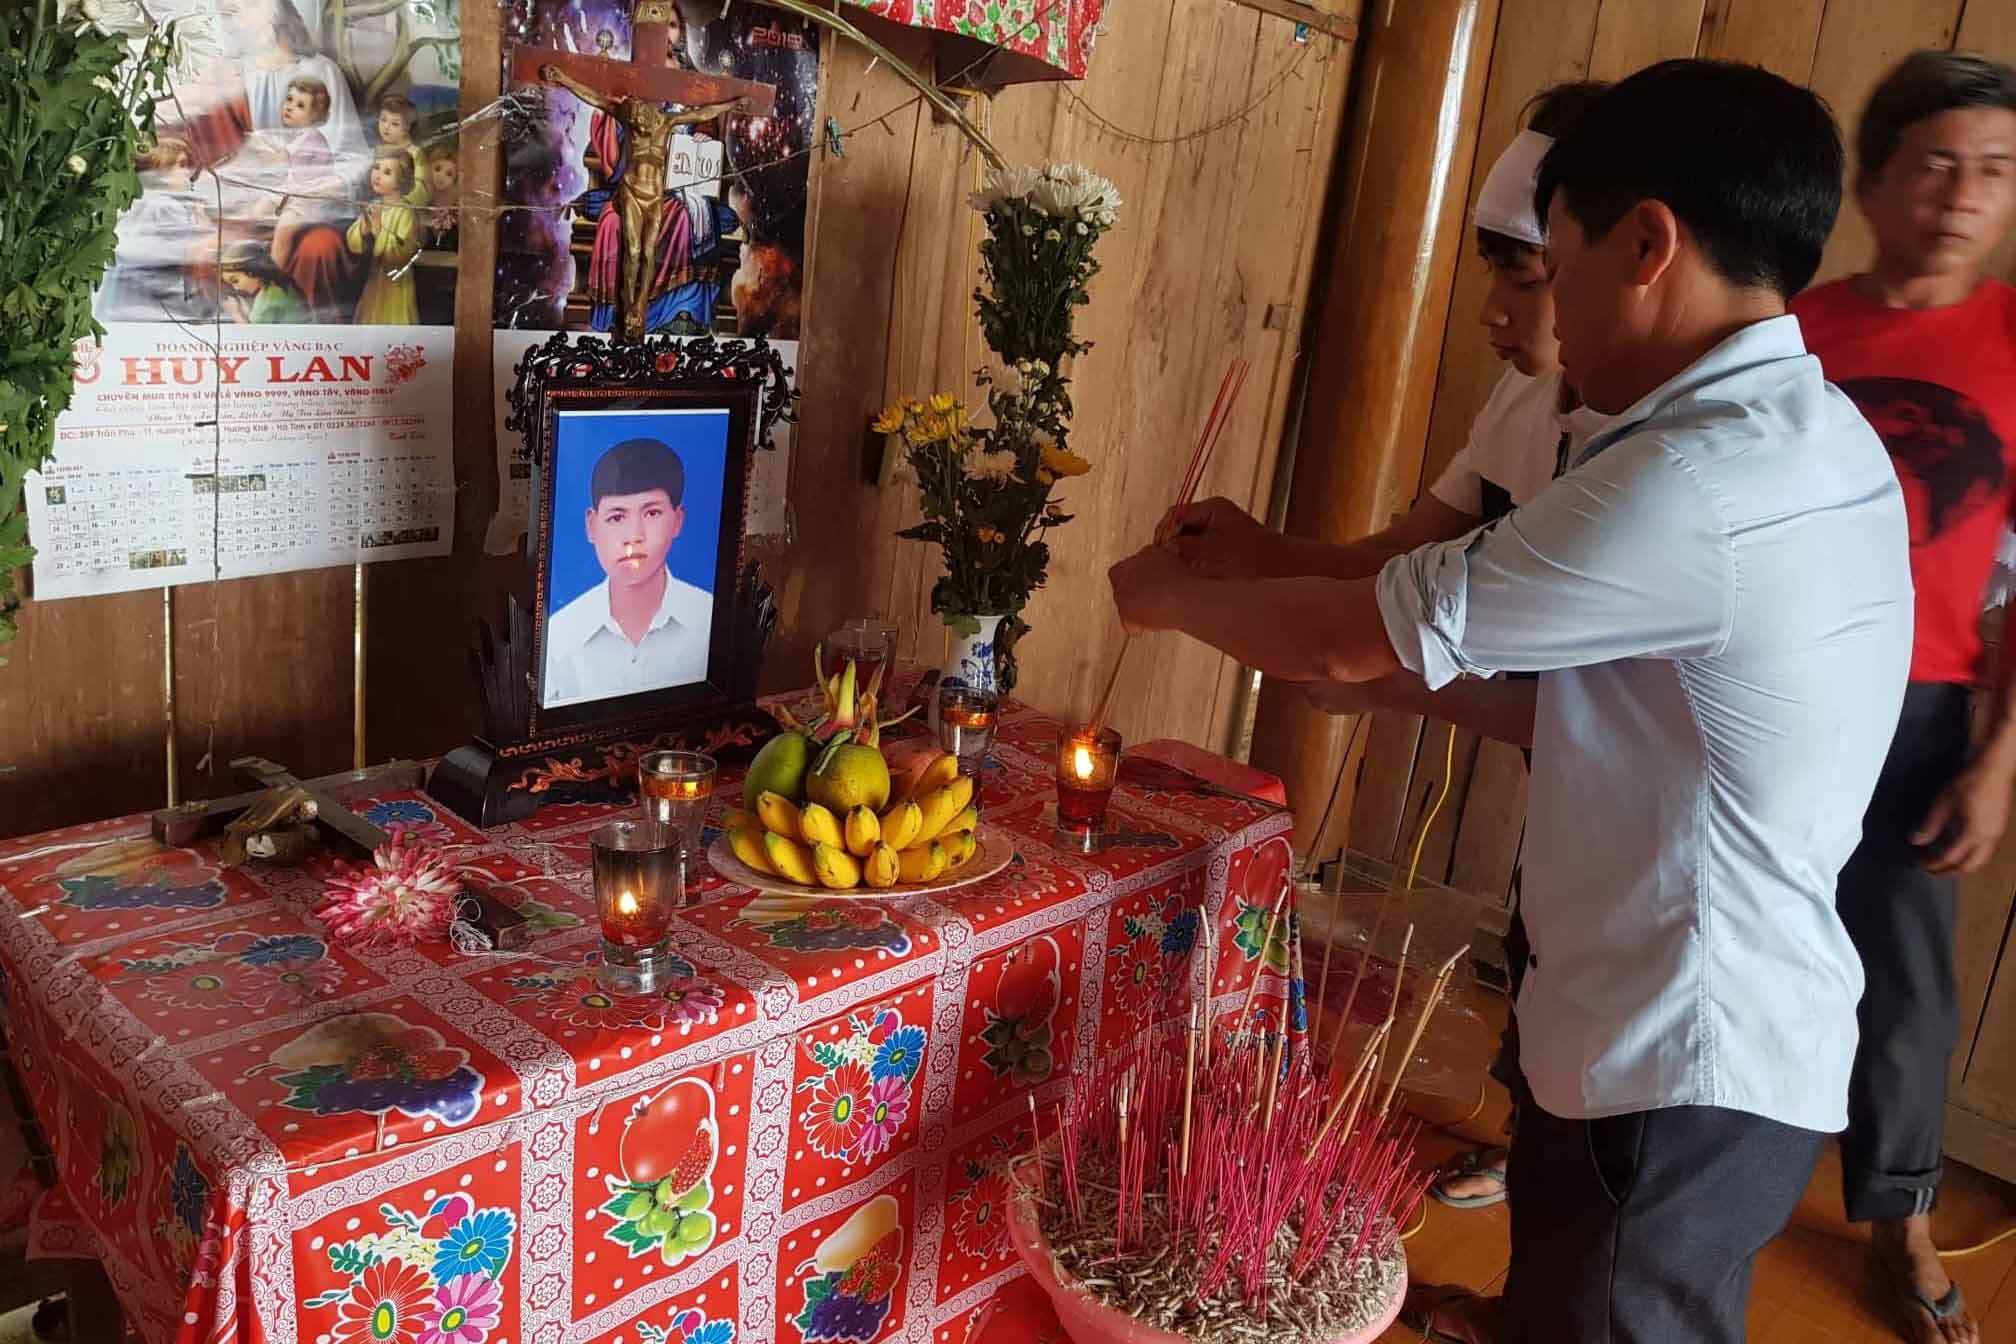 Phạm nhân đâm chết bạn tù ở Hà Tĩnh: Nữ đại úy công an bị đình chỉ